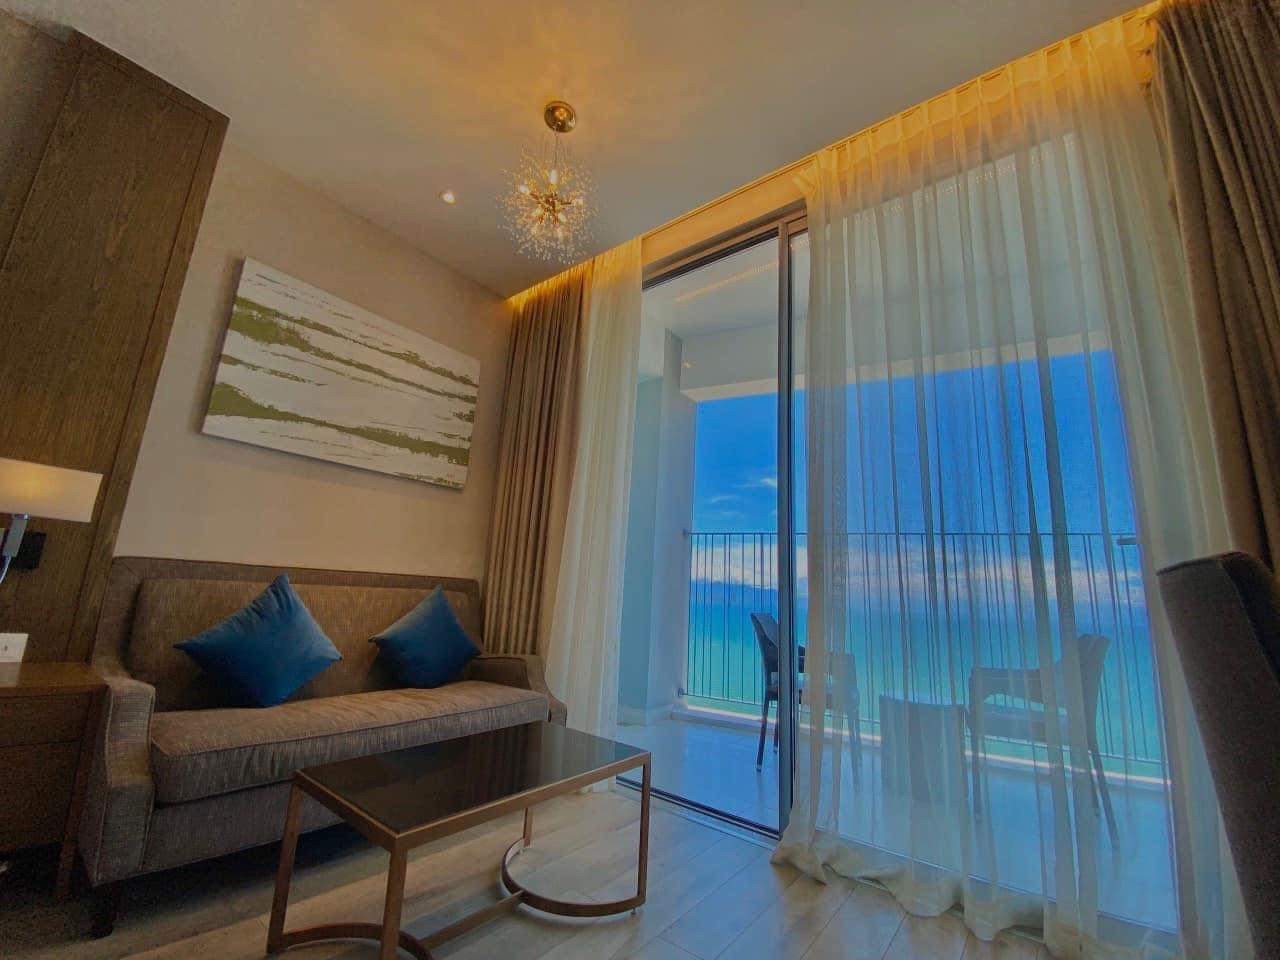 (NHẬN) Booking NGÀY căn hộ Panorama Nha Trang, Giá Chỉ từ 600.000 vnd/ngày 2